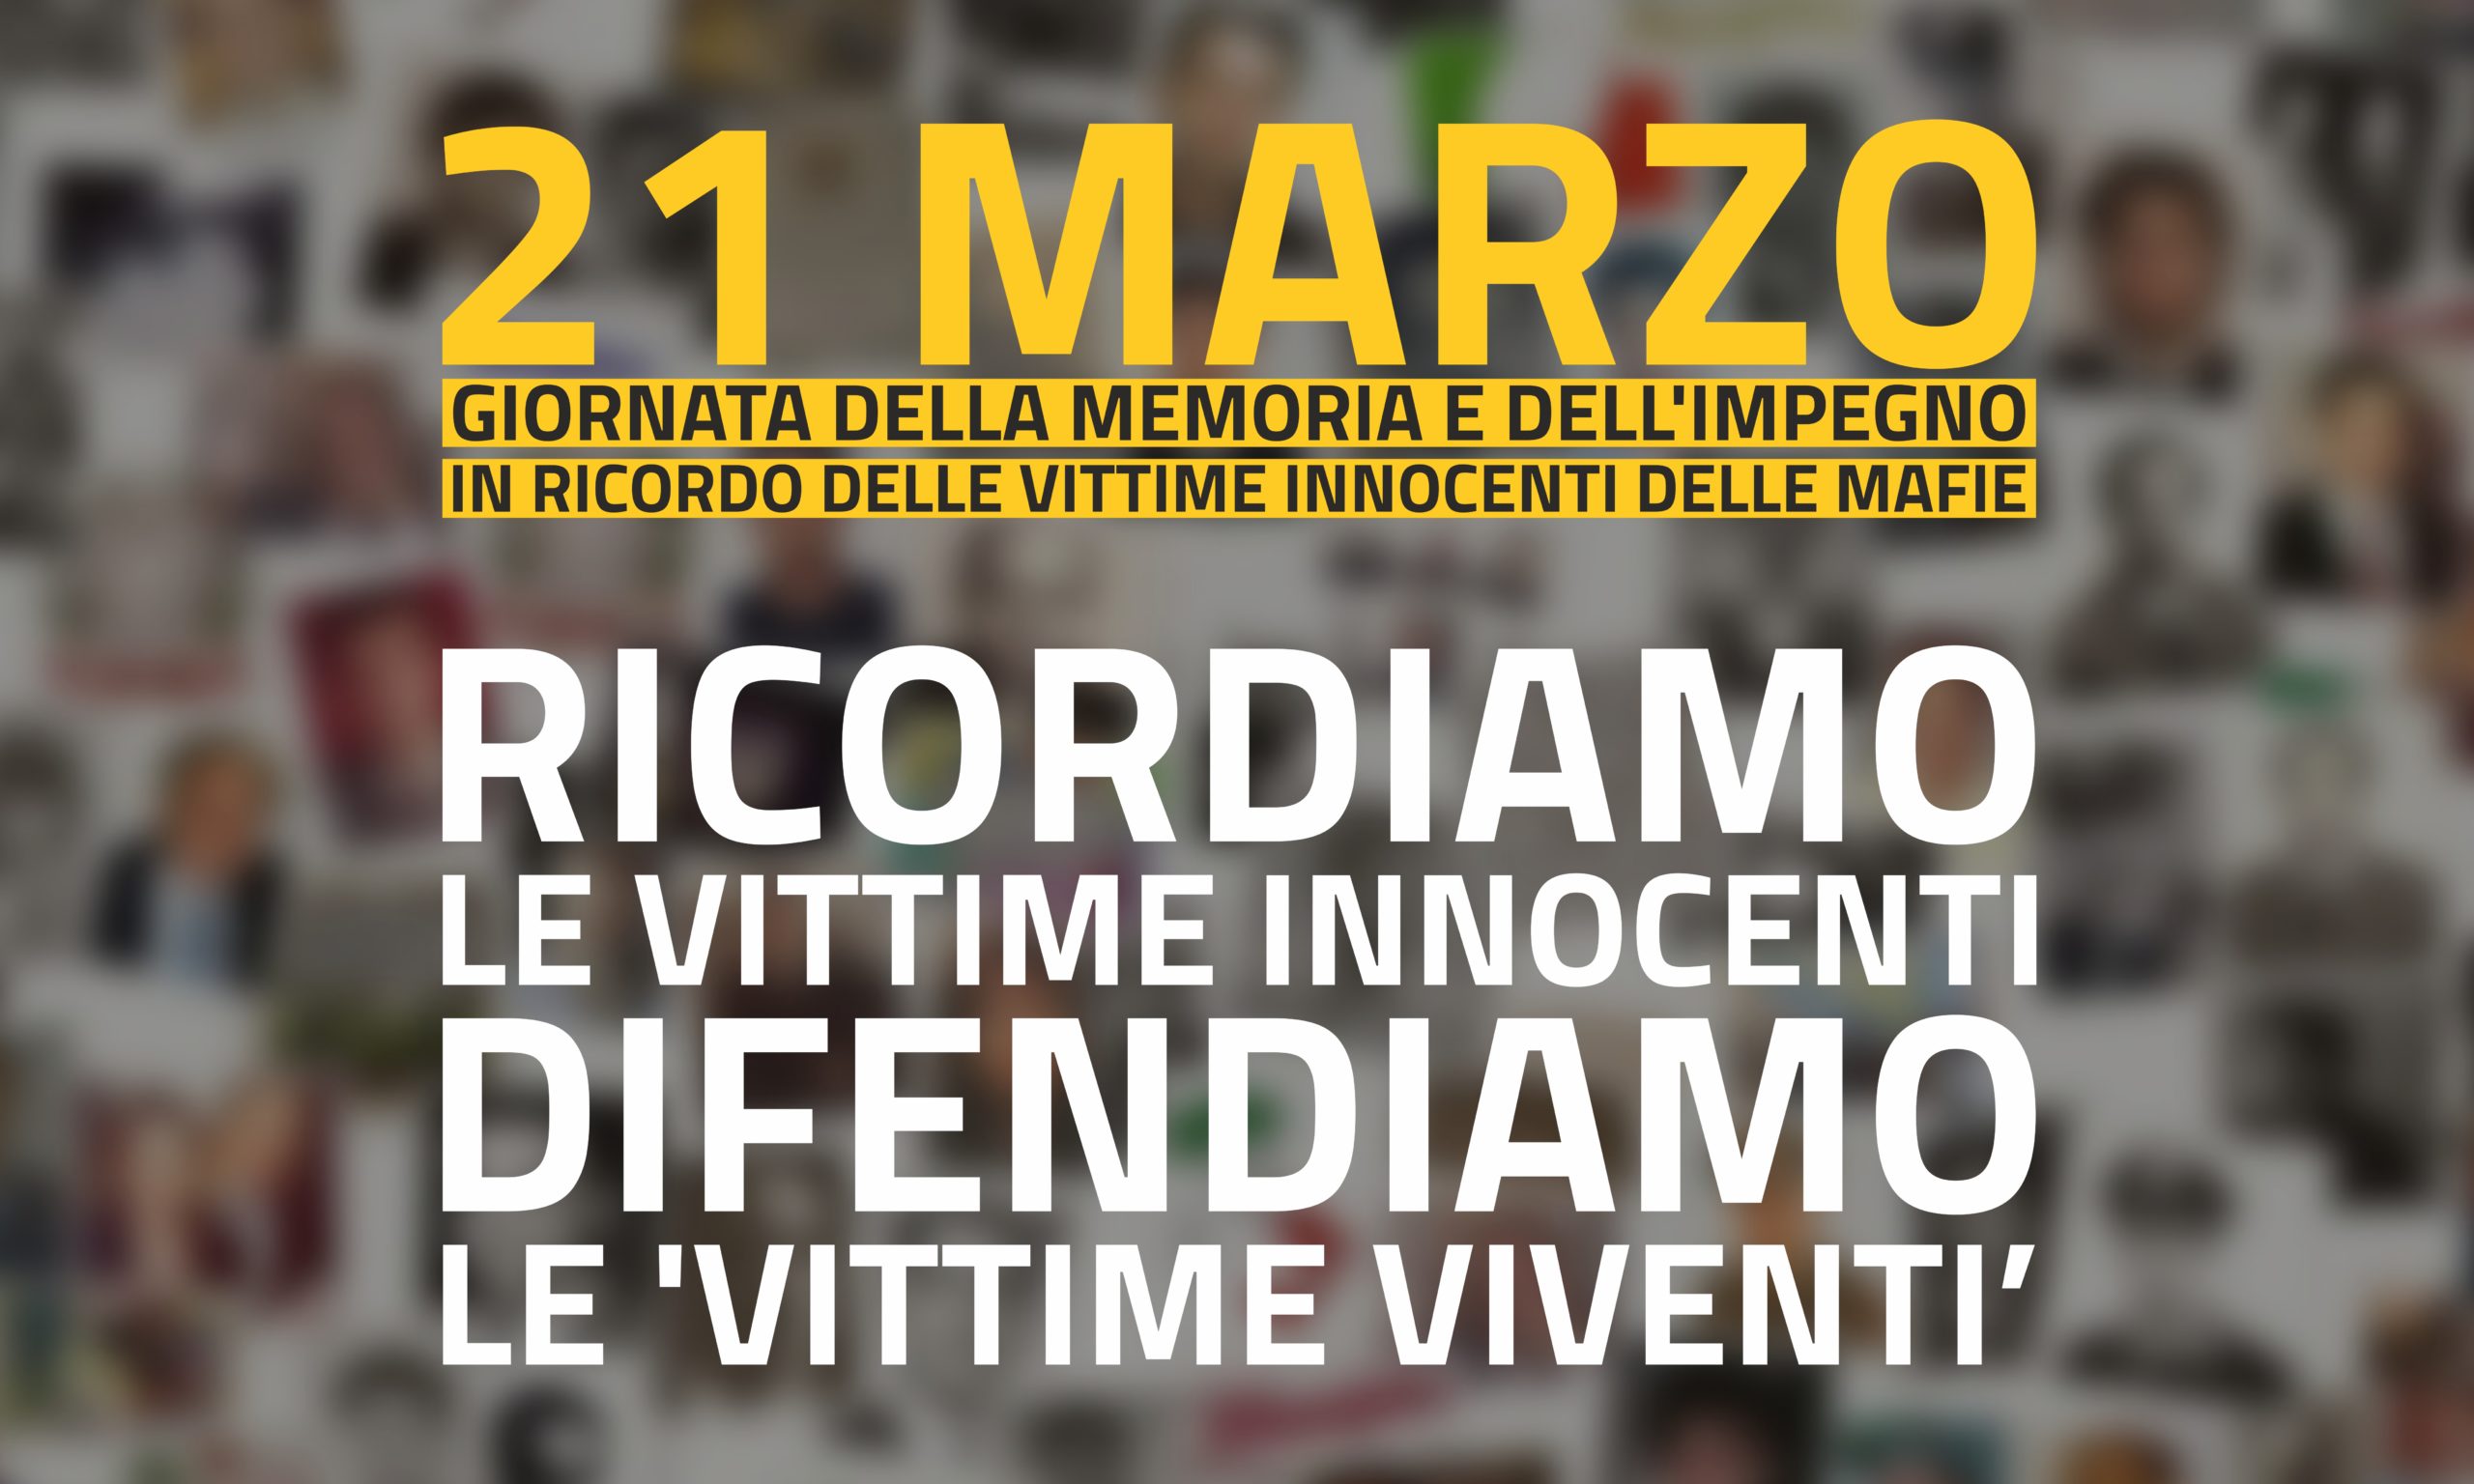 21 marzo contro le mafie: ricordiamo le vittime innocenti, difendiamo le ‘vittime viventi’